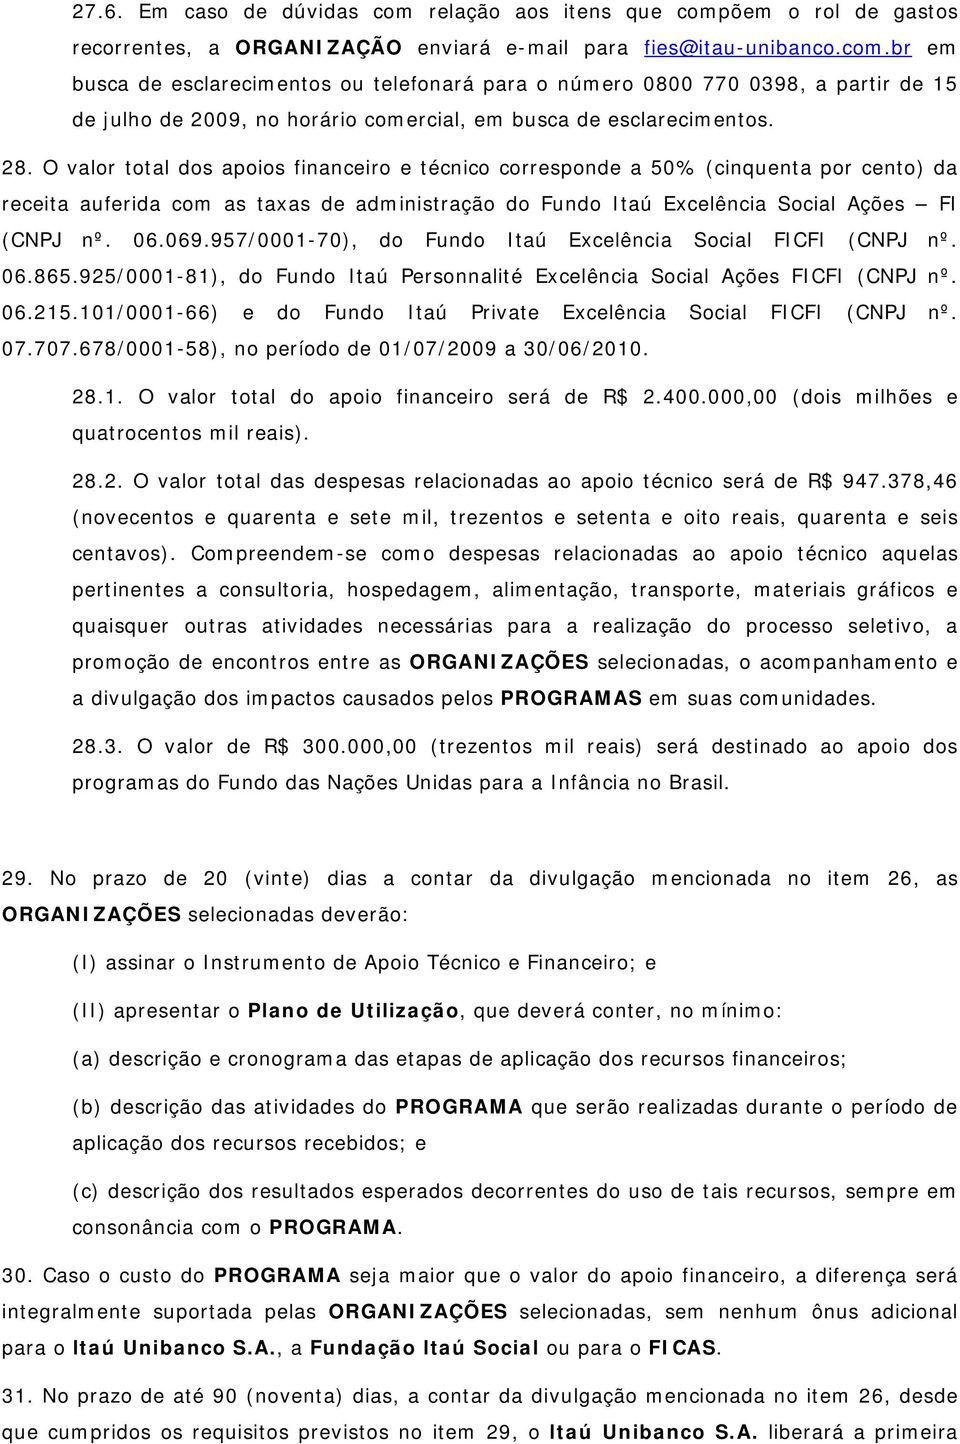 957/0001-70), do Fundo Itaú Excelência Social FICFI (CNPJ nº. 06.865.925/0001-81), do Fundo Itaú Personnalité Excelência Social Ações FICFI (CNPJ nº. 06.215.